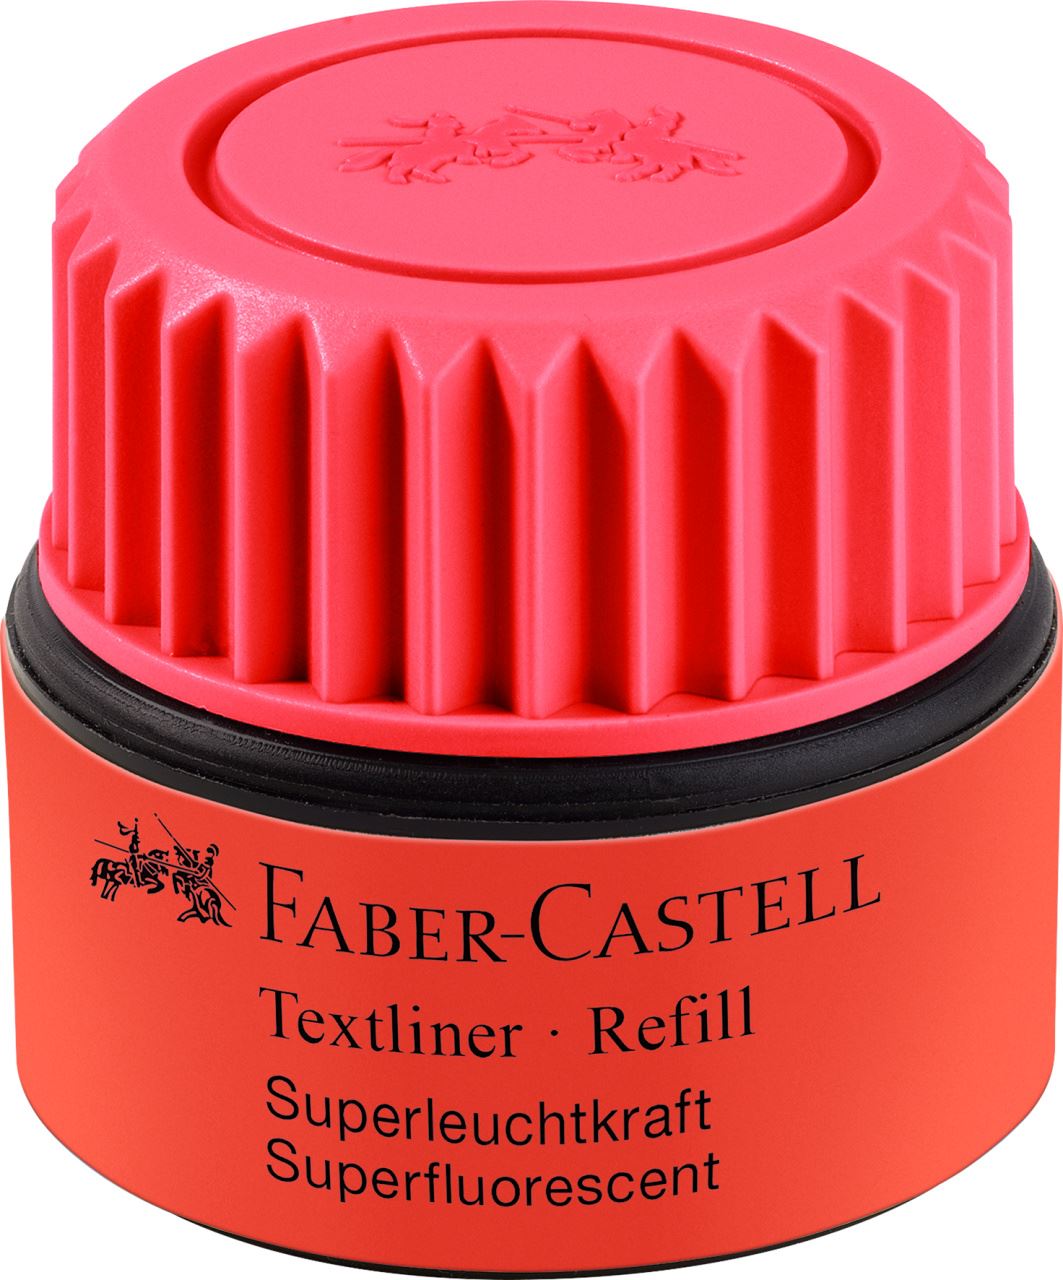 Faber-Castell - Textliner 1549 refill system, red